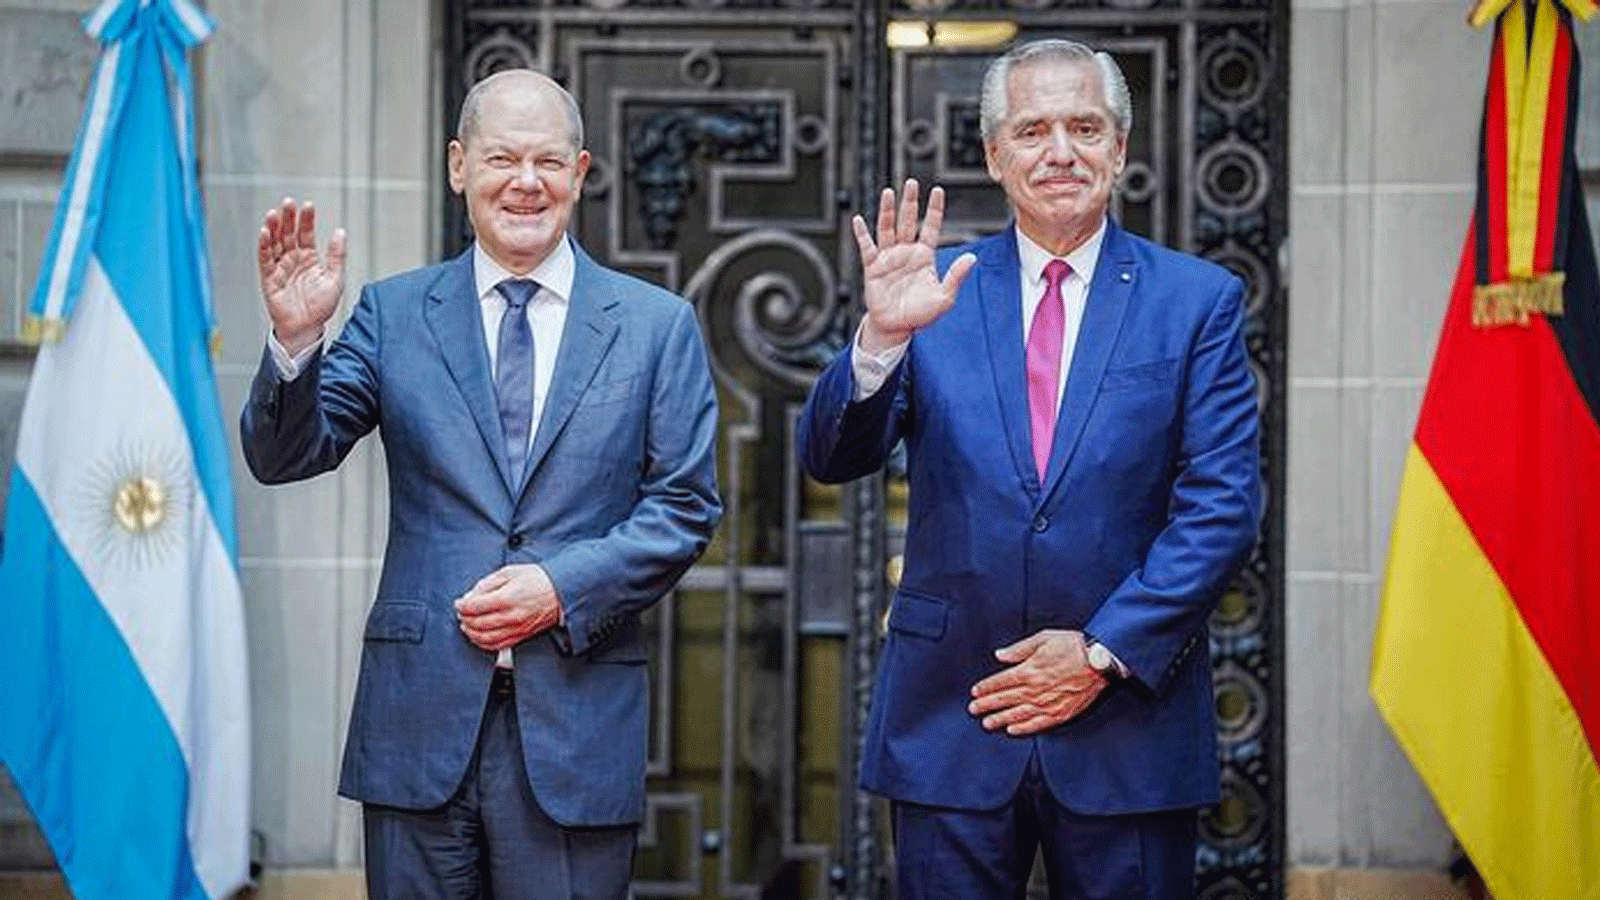 الرئيس الأرجنتيني ألبرتو فرنانديس المستشار والألماني أولاف شولتس خلال زيارة الأخير إلى أميركا اللاتينية